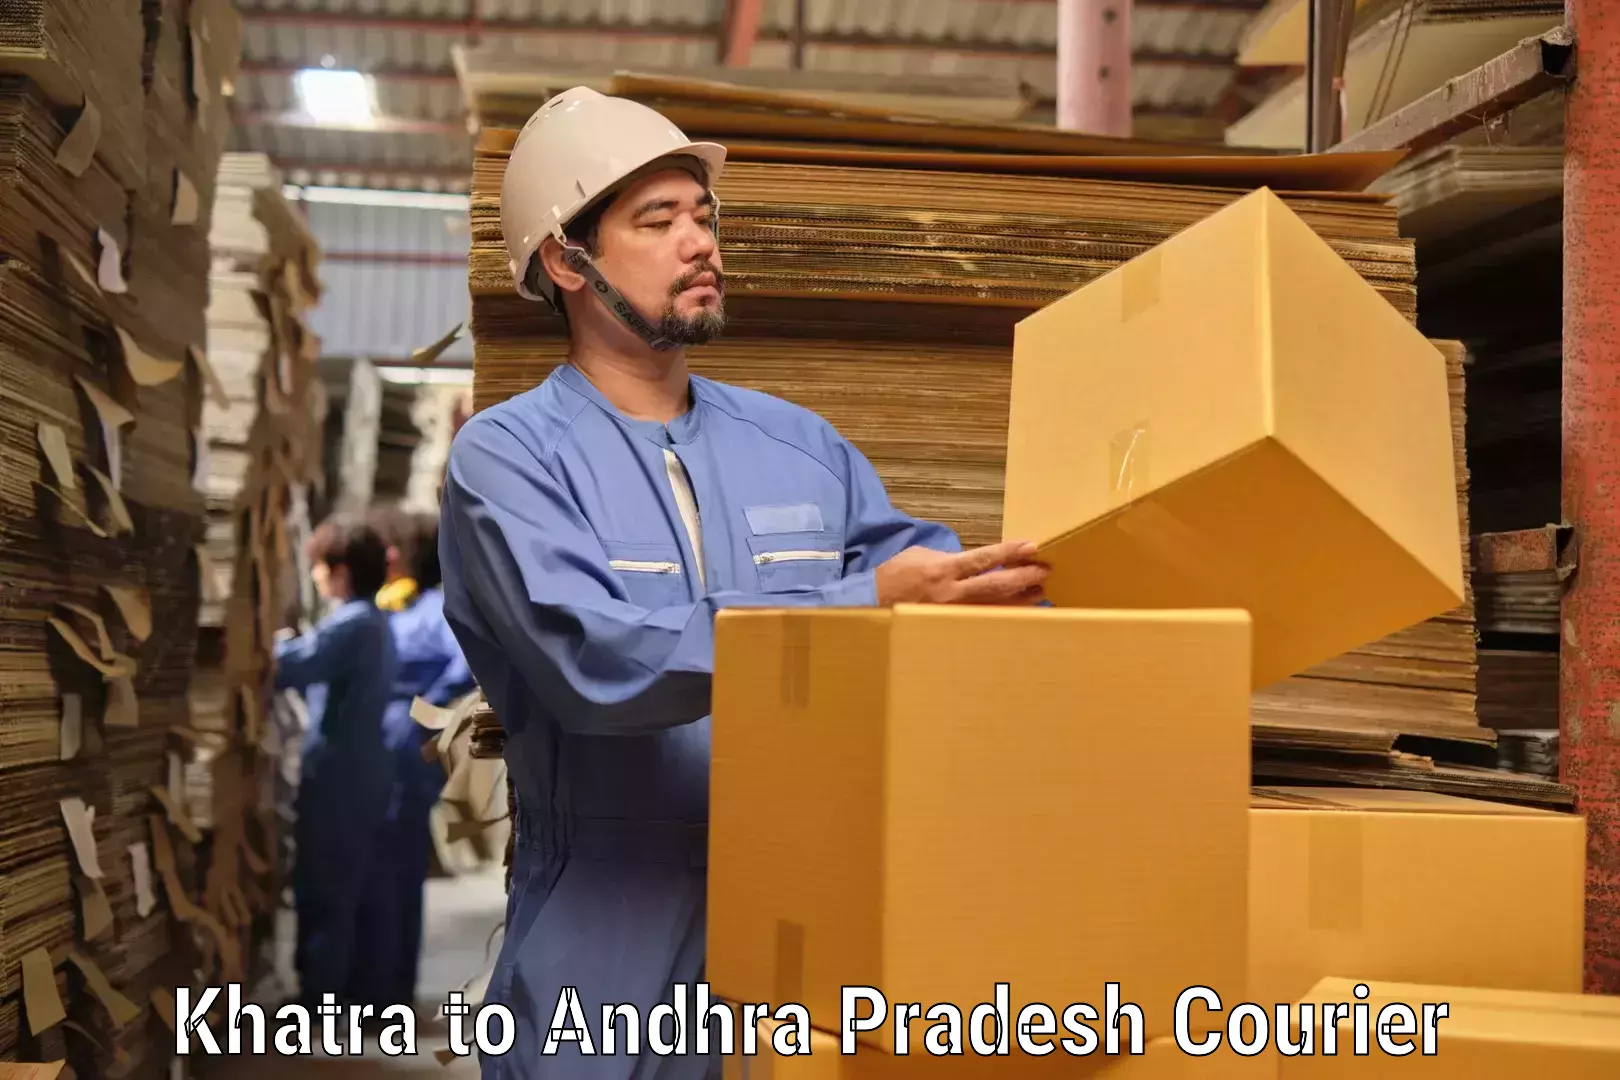 Customizable shipping options Khatra to Madakasira